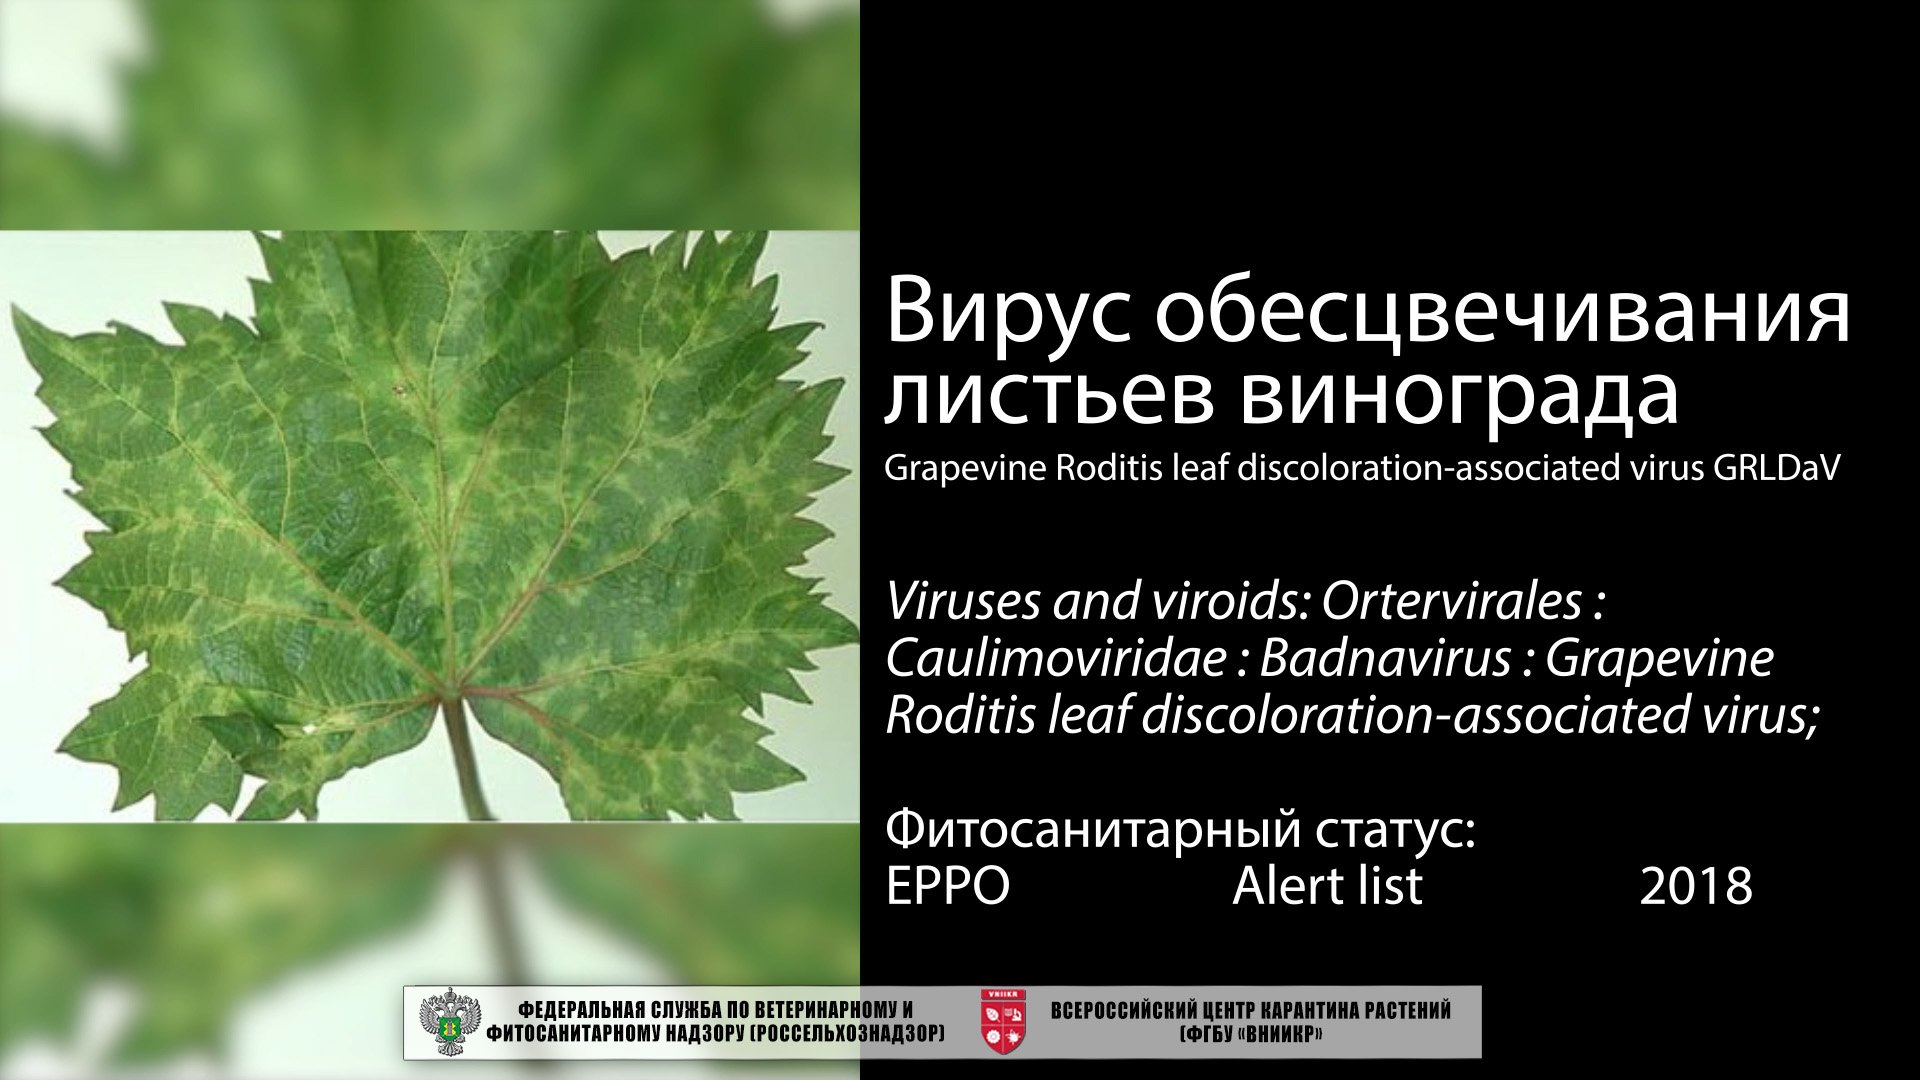 Вирус обесцвечивания листьев винограда (Grapevine Roditis leaf discoloration-associated virus)